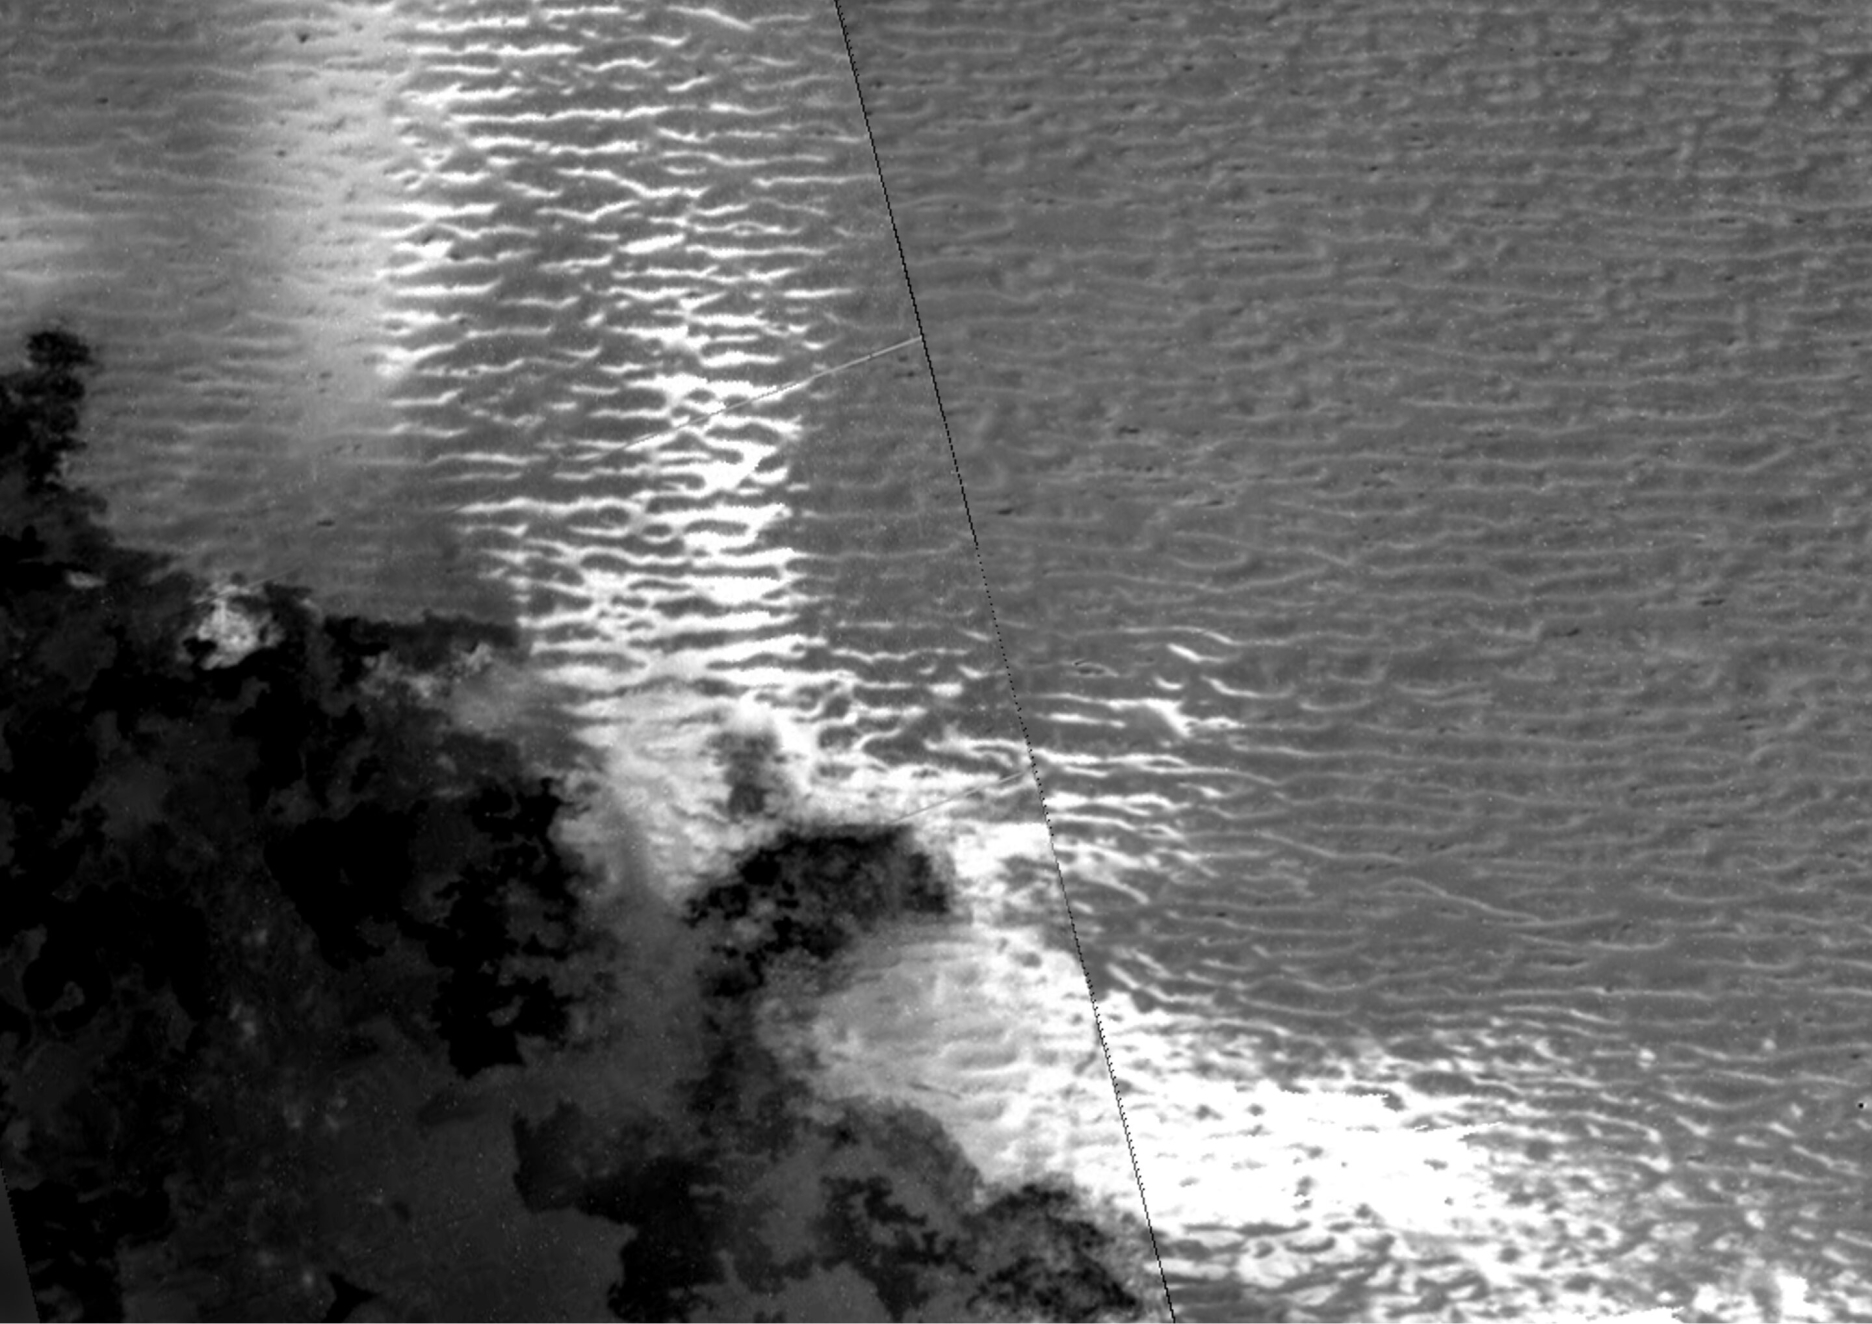 Potencijalne dine na Jupiterovom mjesecu Iona. Analiza pokazuje da je tamni materijal (dolje lijevo) predstavlja nedavne tokove lave, dok su ponovljene crte koje dominiraju slikom potencijalne dine. Svijetla, bijela područja mogu biti novonastala zrna jer tokovi lave isparavaju susjedni mraz (©NASA/JPL-Caltech/Rutgers).